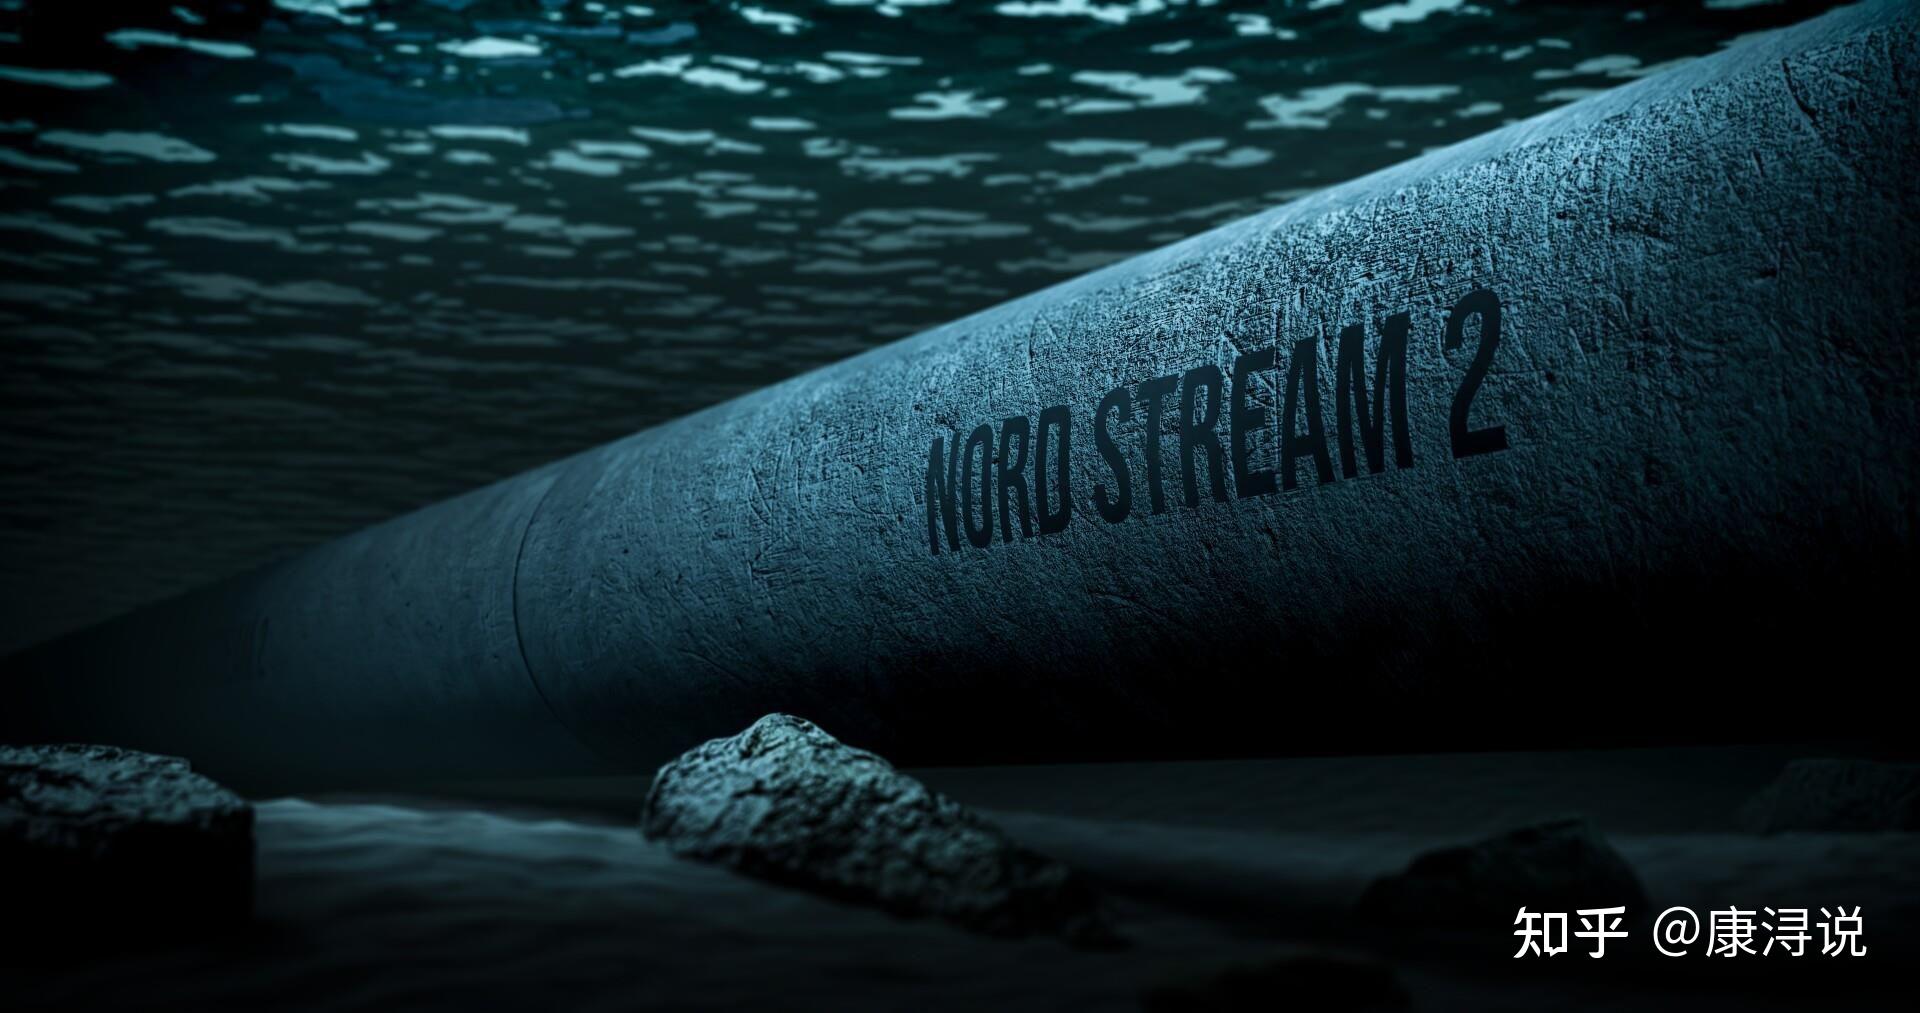 北溪天然氣管線疑遭破壞 瑞典發現第4處洩漏點 | 零新聞 2022.09